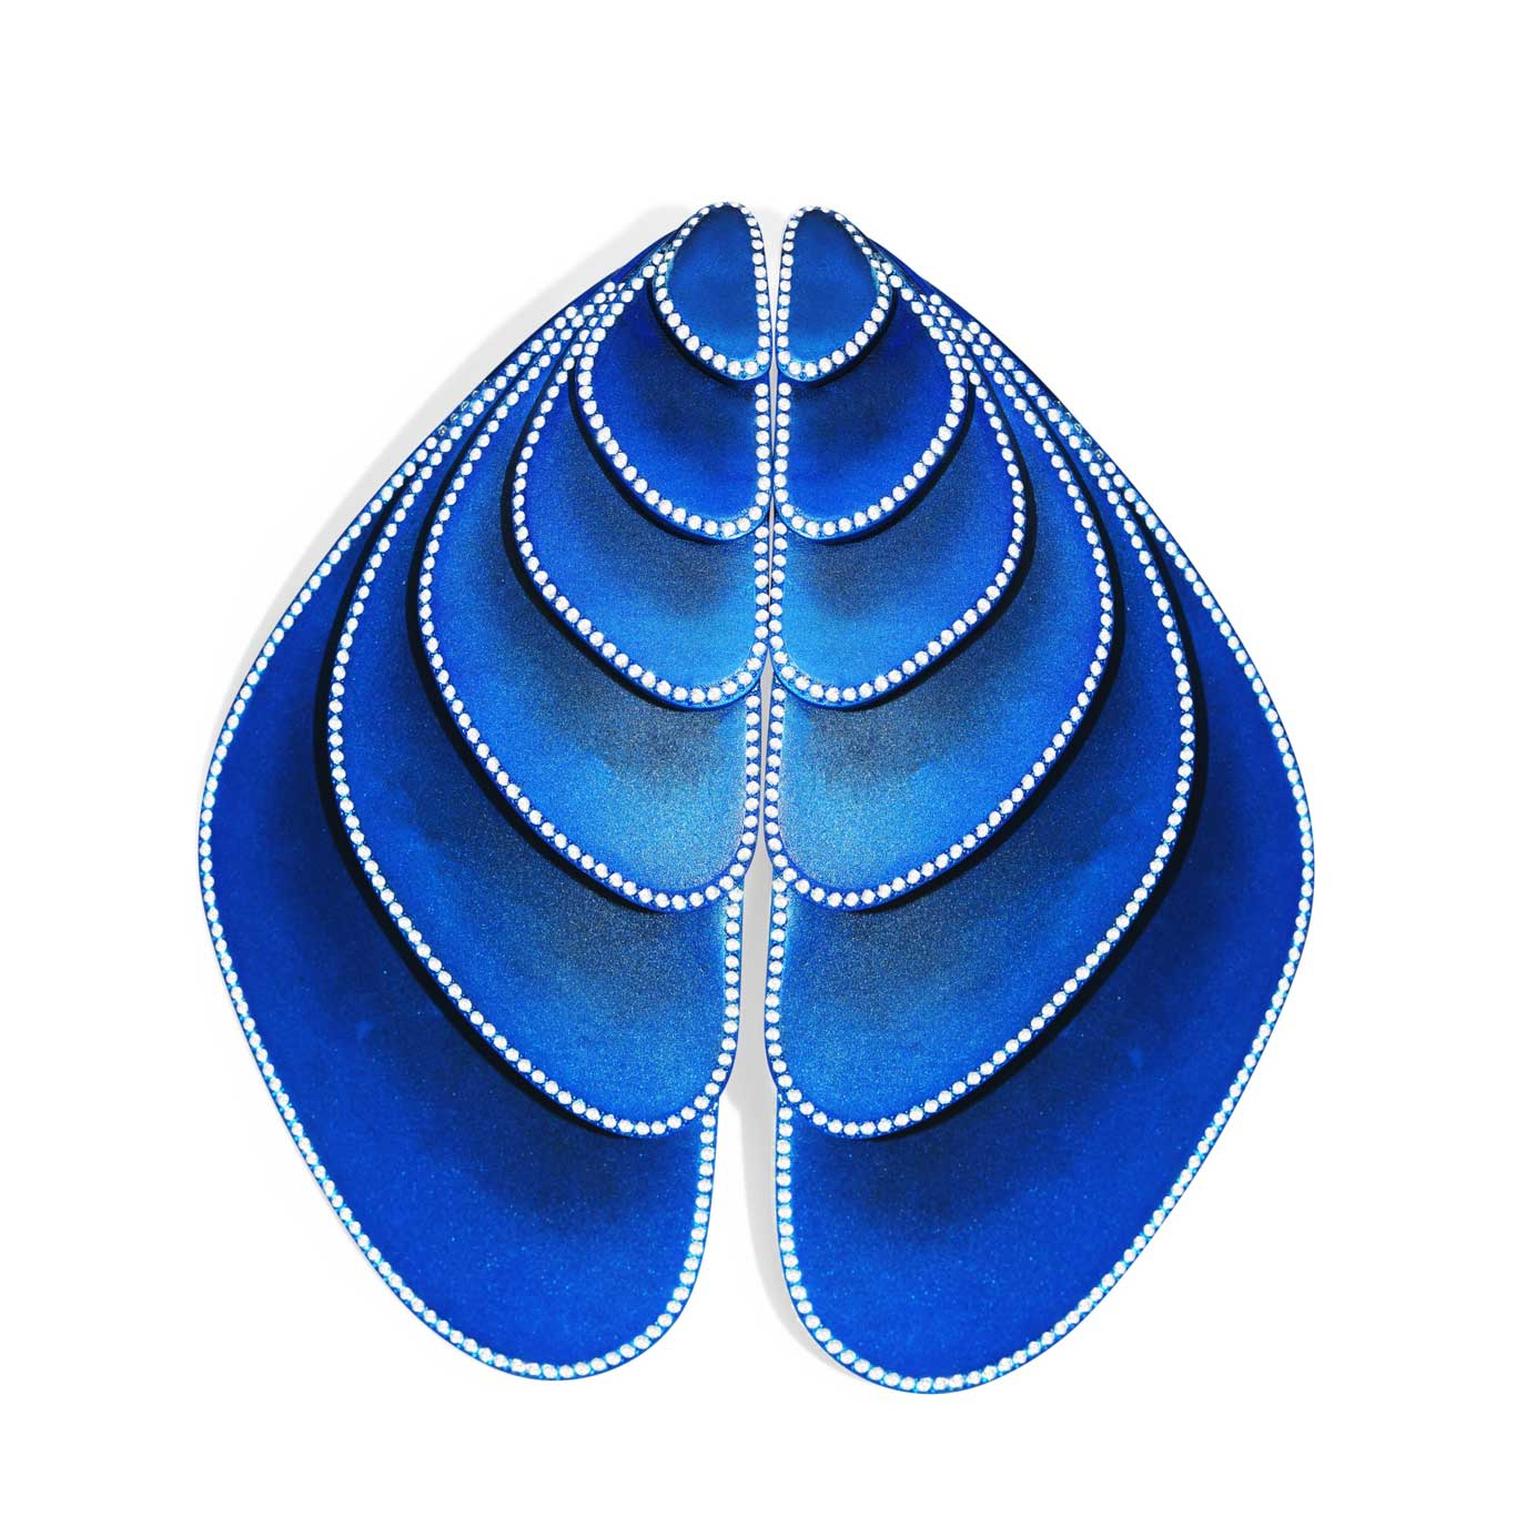 Emmanuel Tarpin blue wing earrings